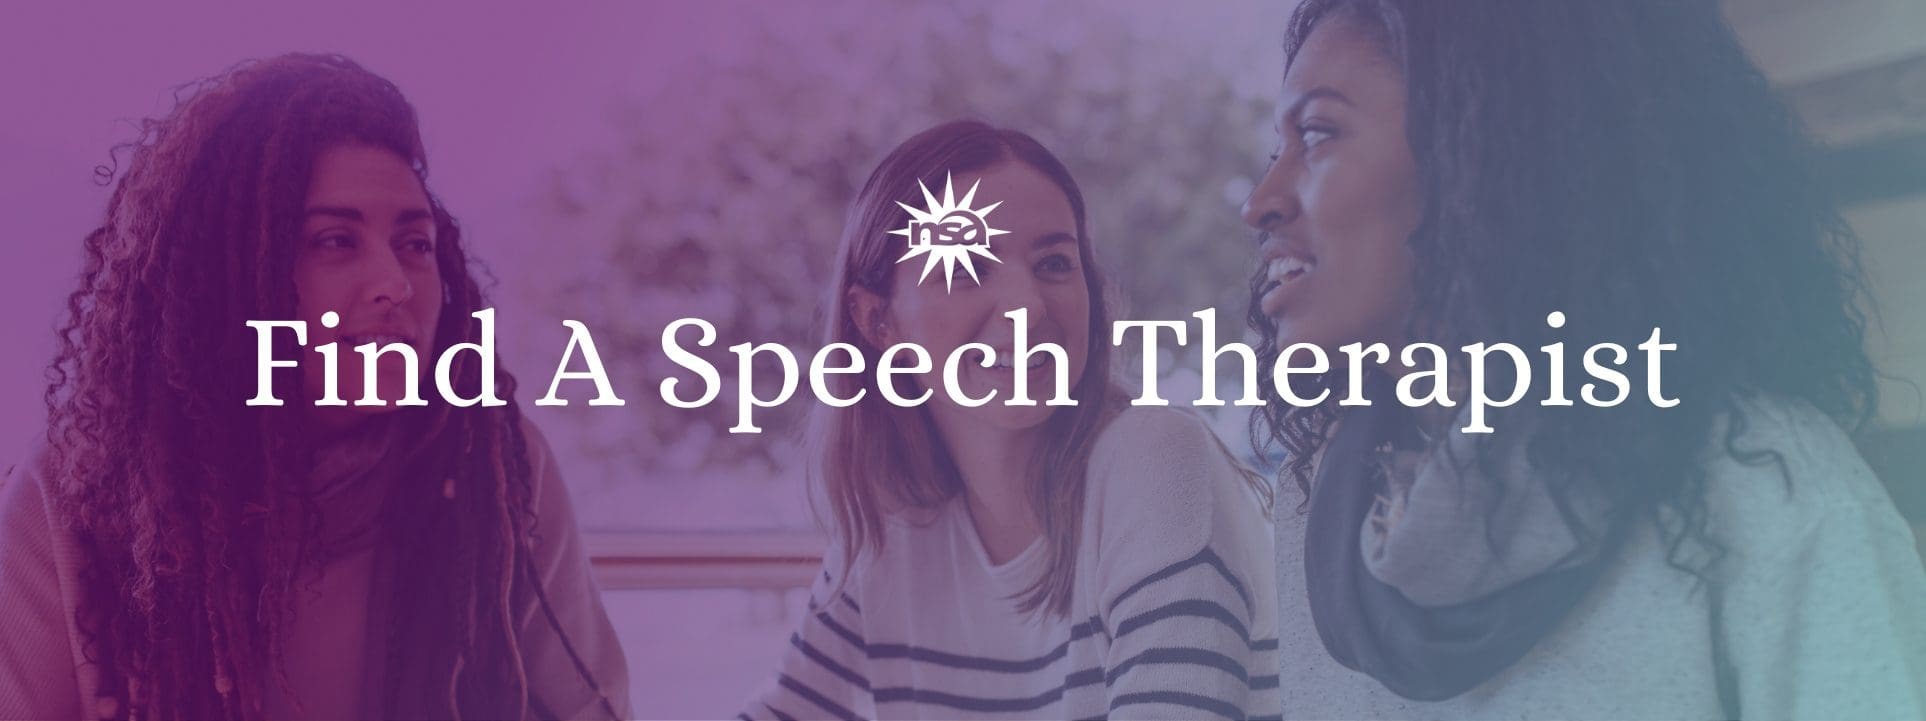 Find a speech therapist banner